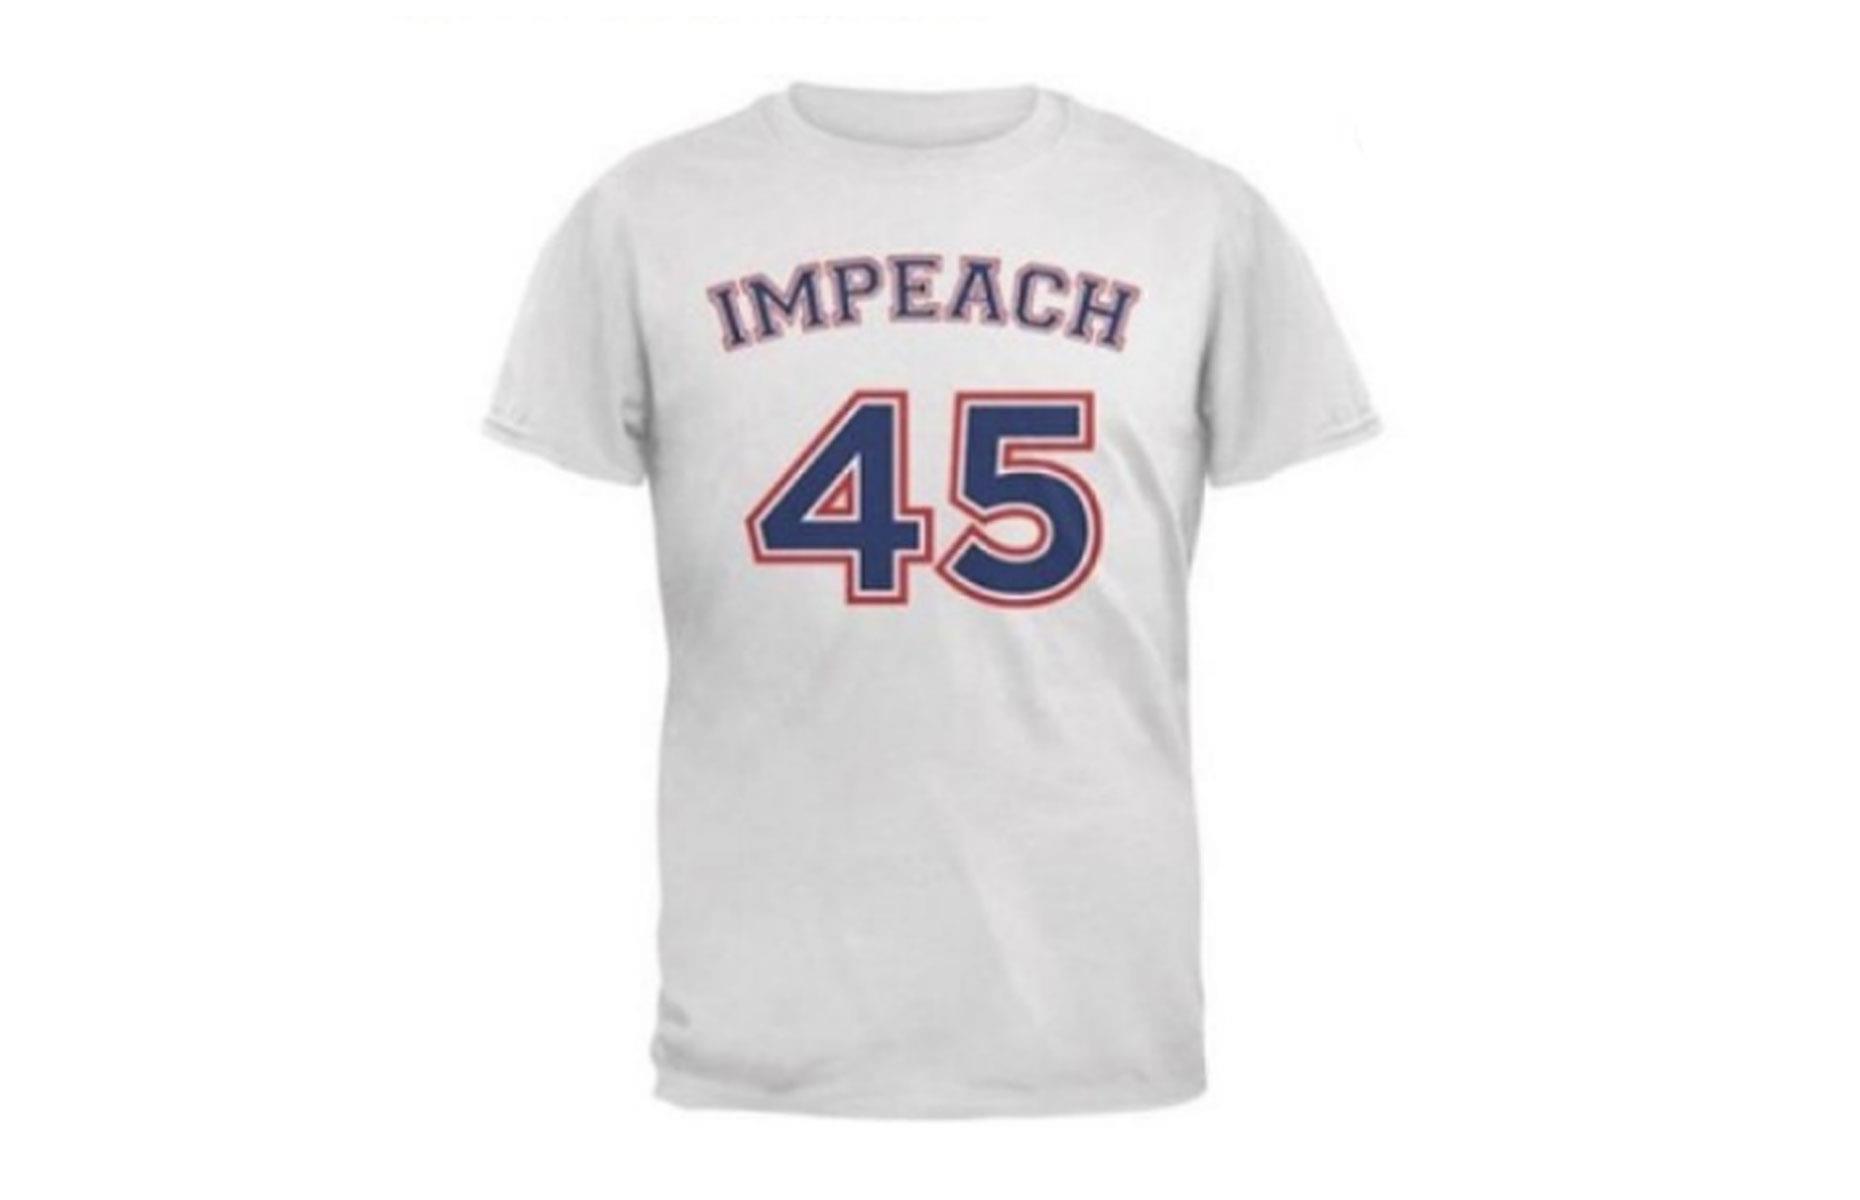 Walmart's "Impeach 45" merch climbdown